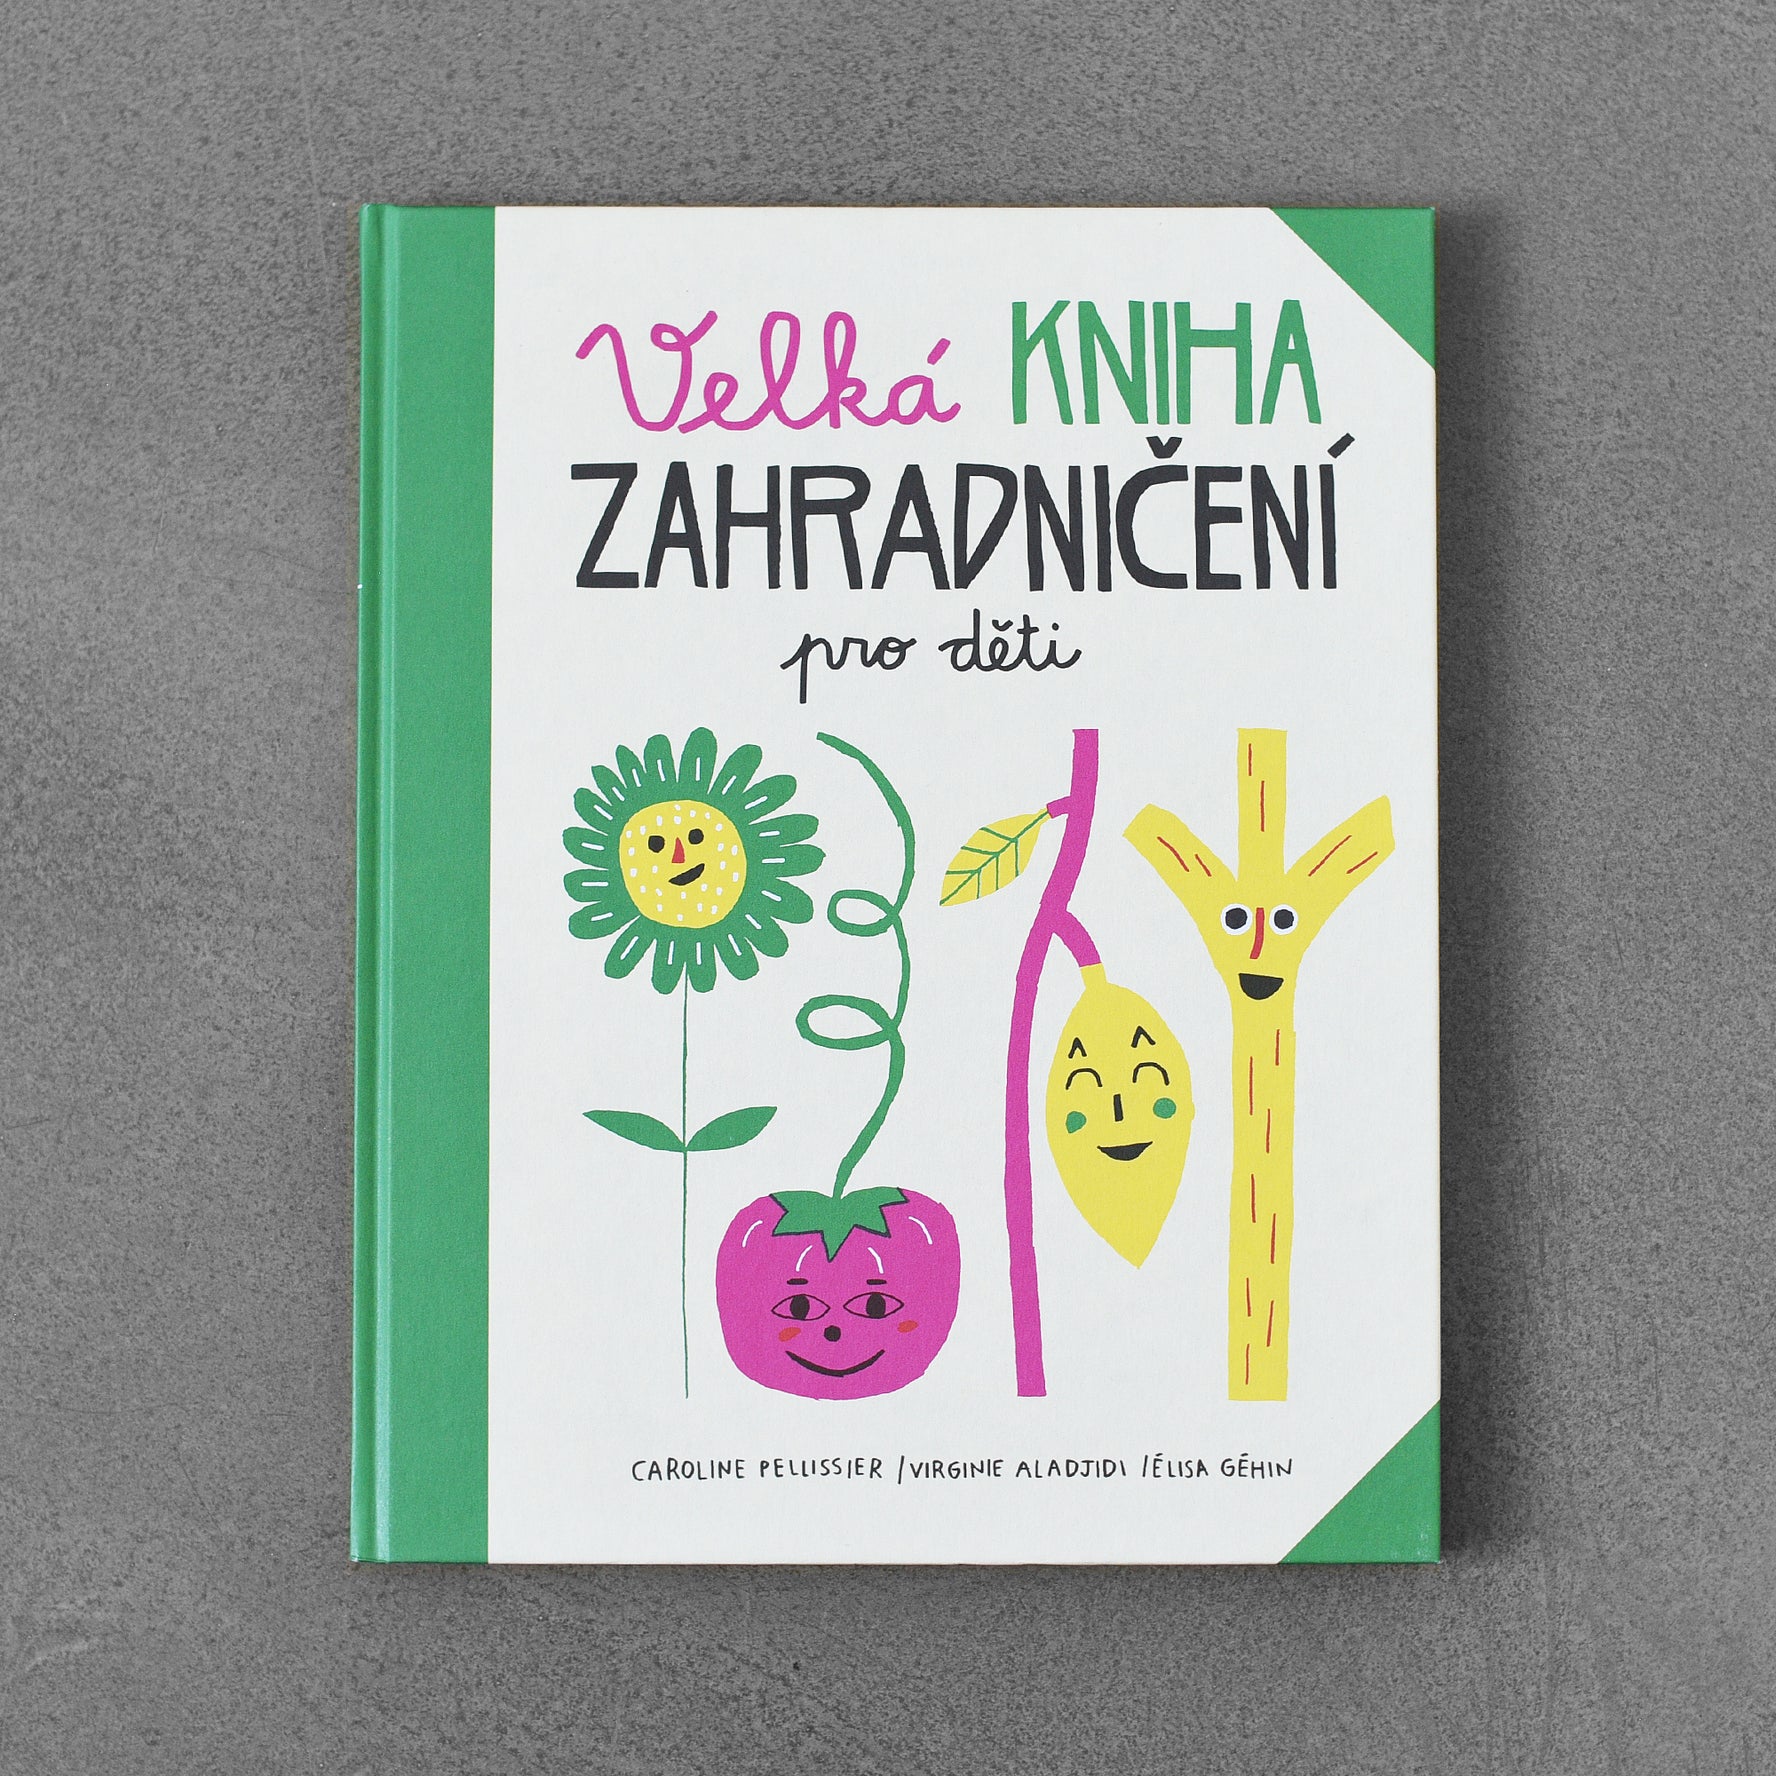 Wielka księga ogrodnictwa dla dzieci – Caroline Pellissier / Virginie Aladjidi / Élisa Géhin